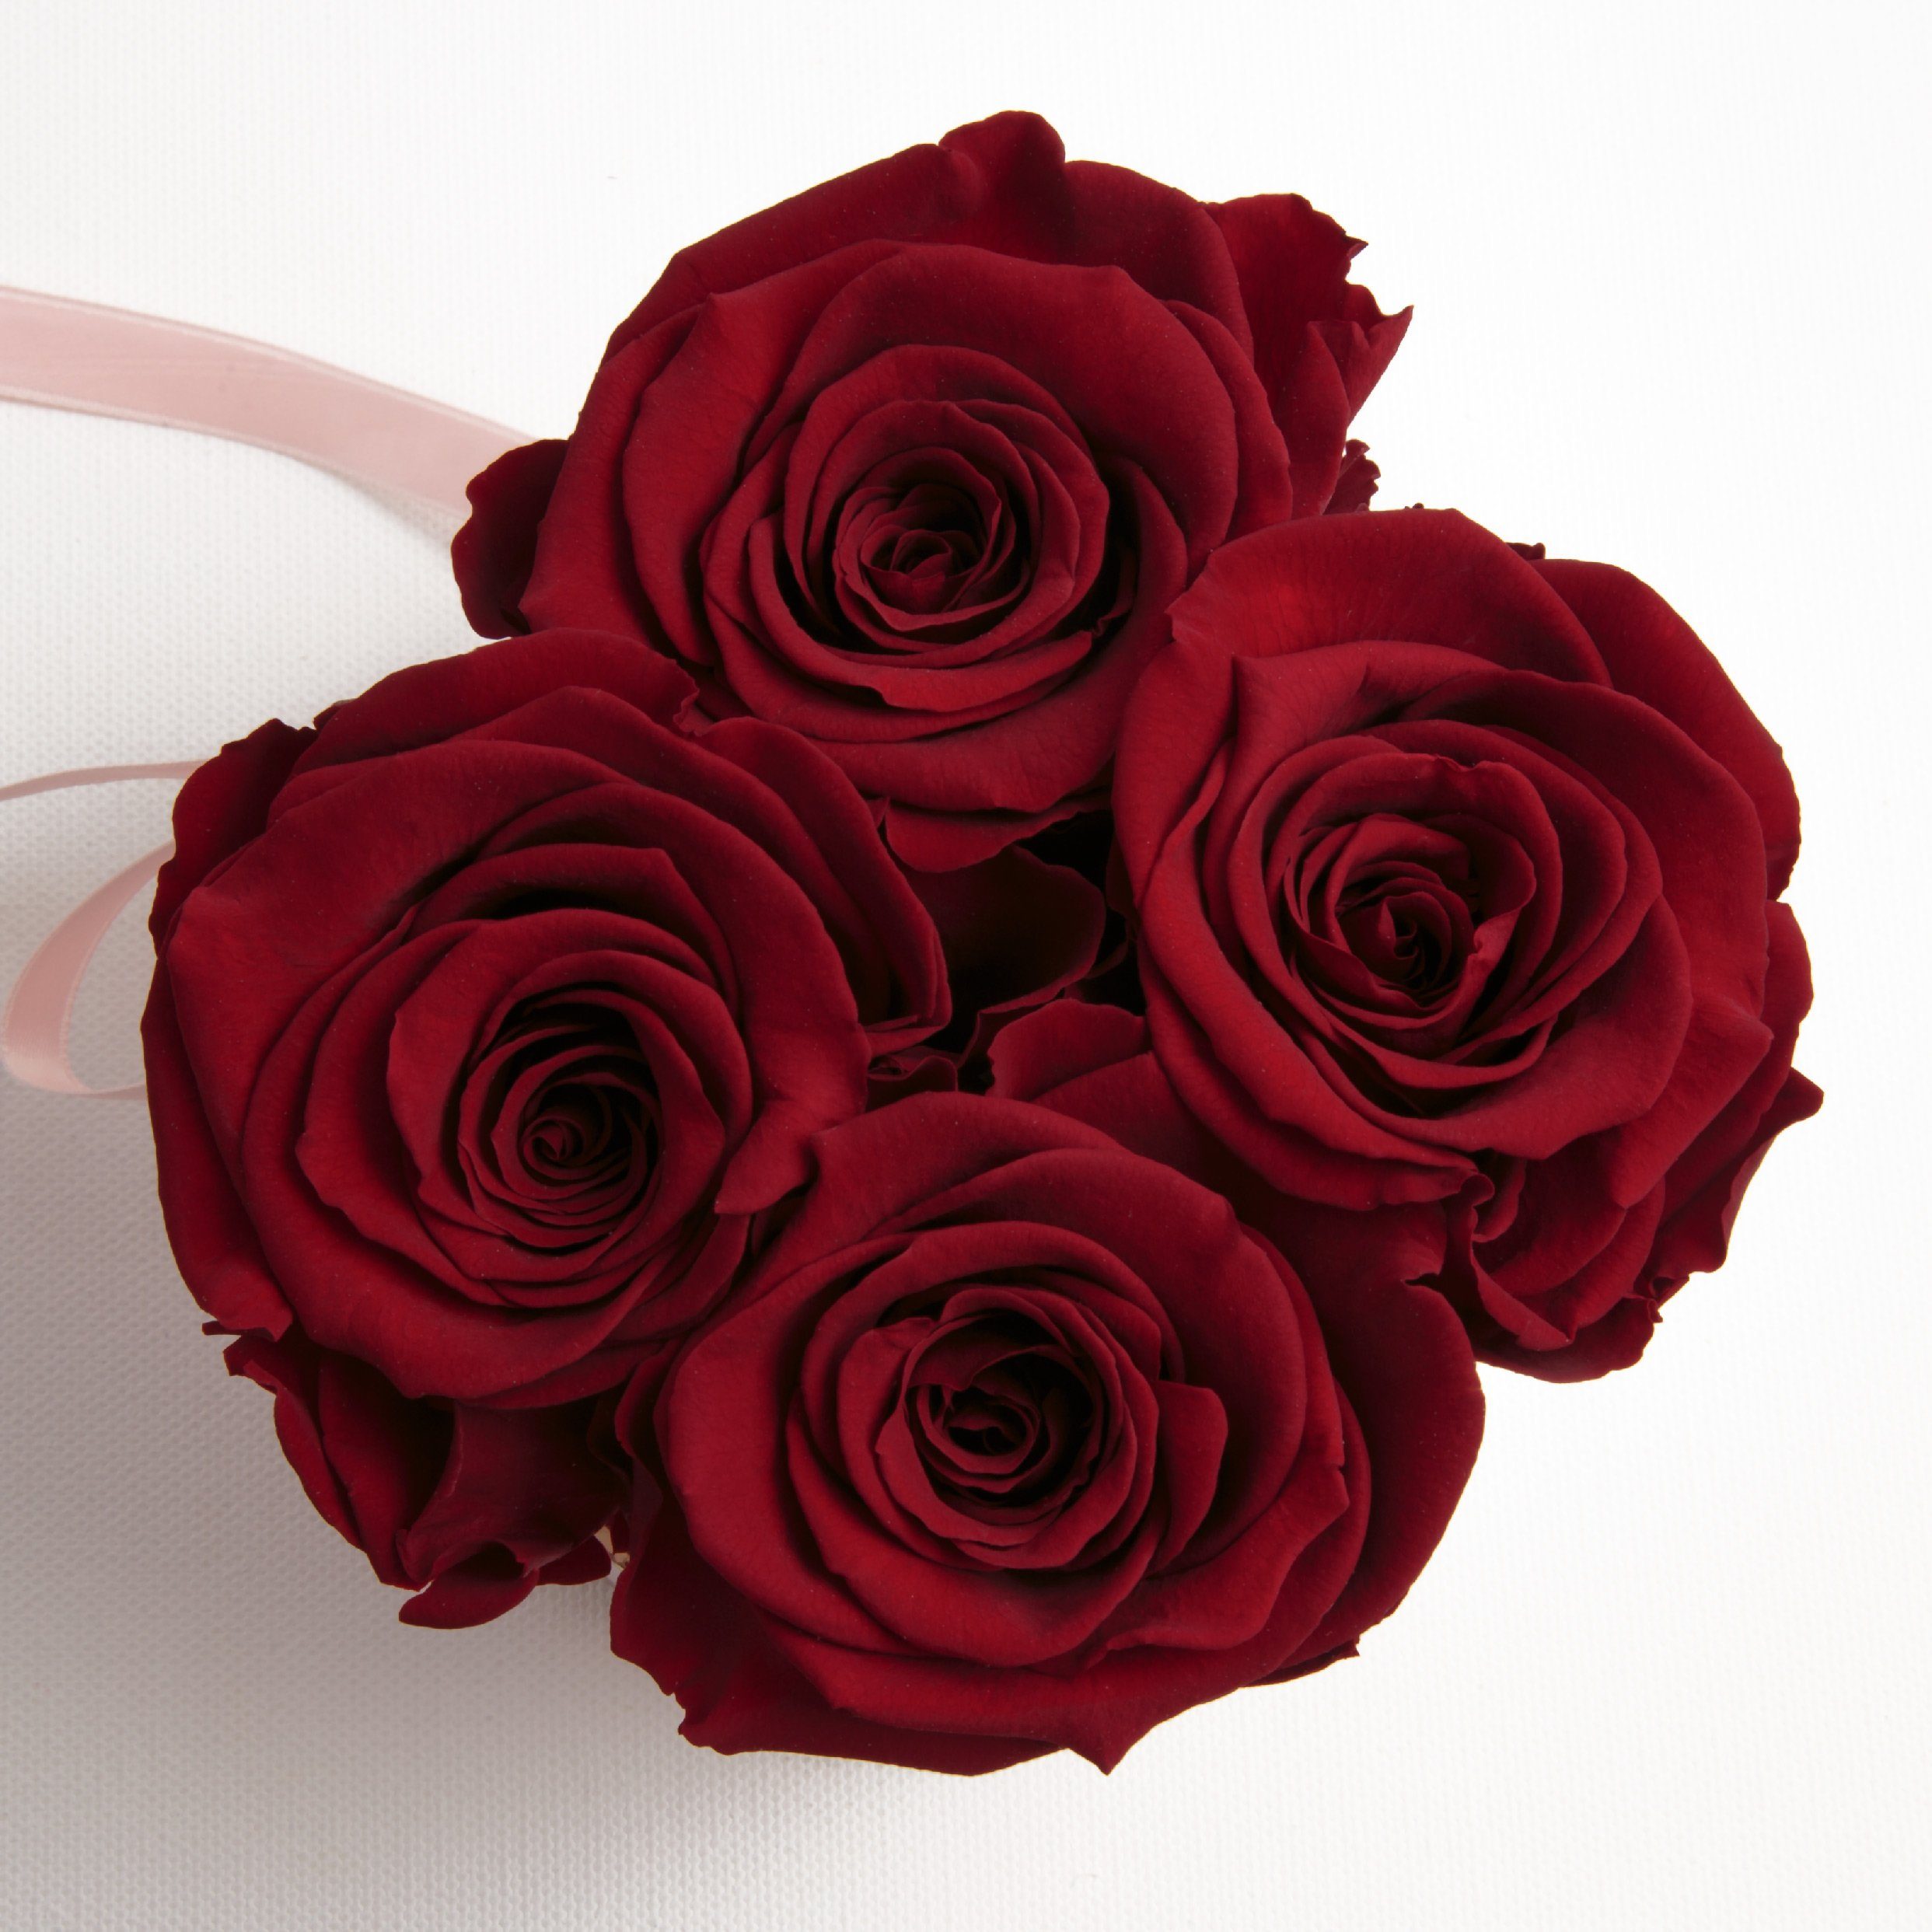 ROSEMARIE Infinity SCHULZ Höhe konservierte Kunstblume cm, echte Rosen Heidelberg, Rose, 4 Rosenbox rund Frauen für Geschenk 10 konservierte Burgundy rosa Rosen